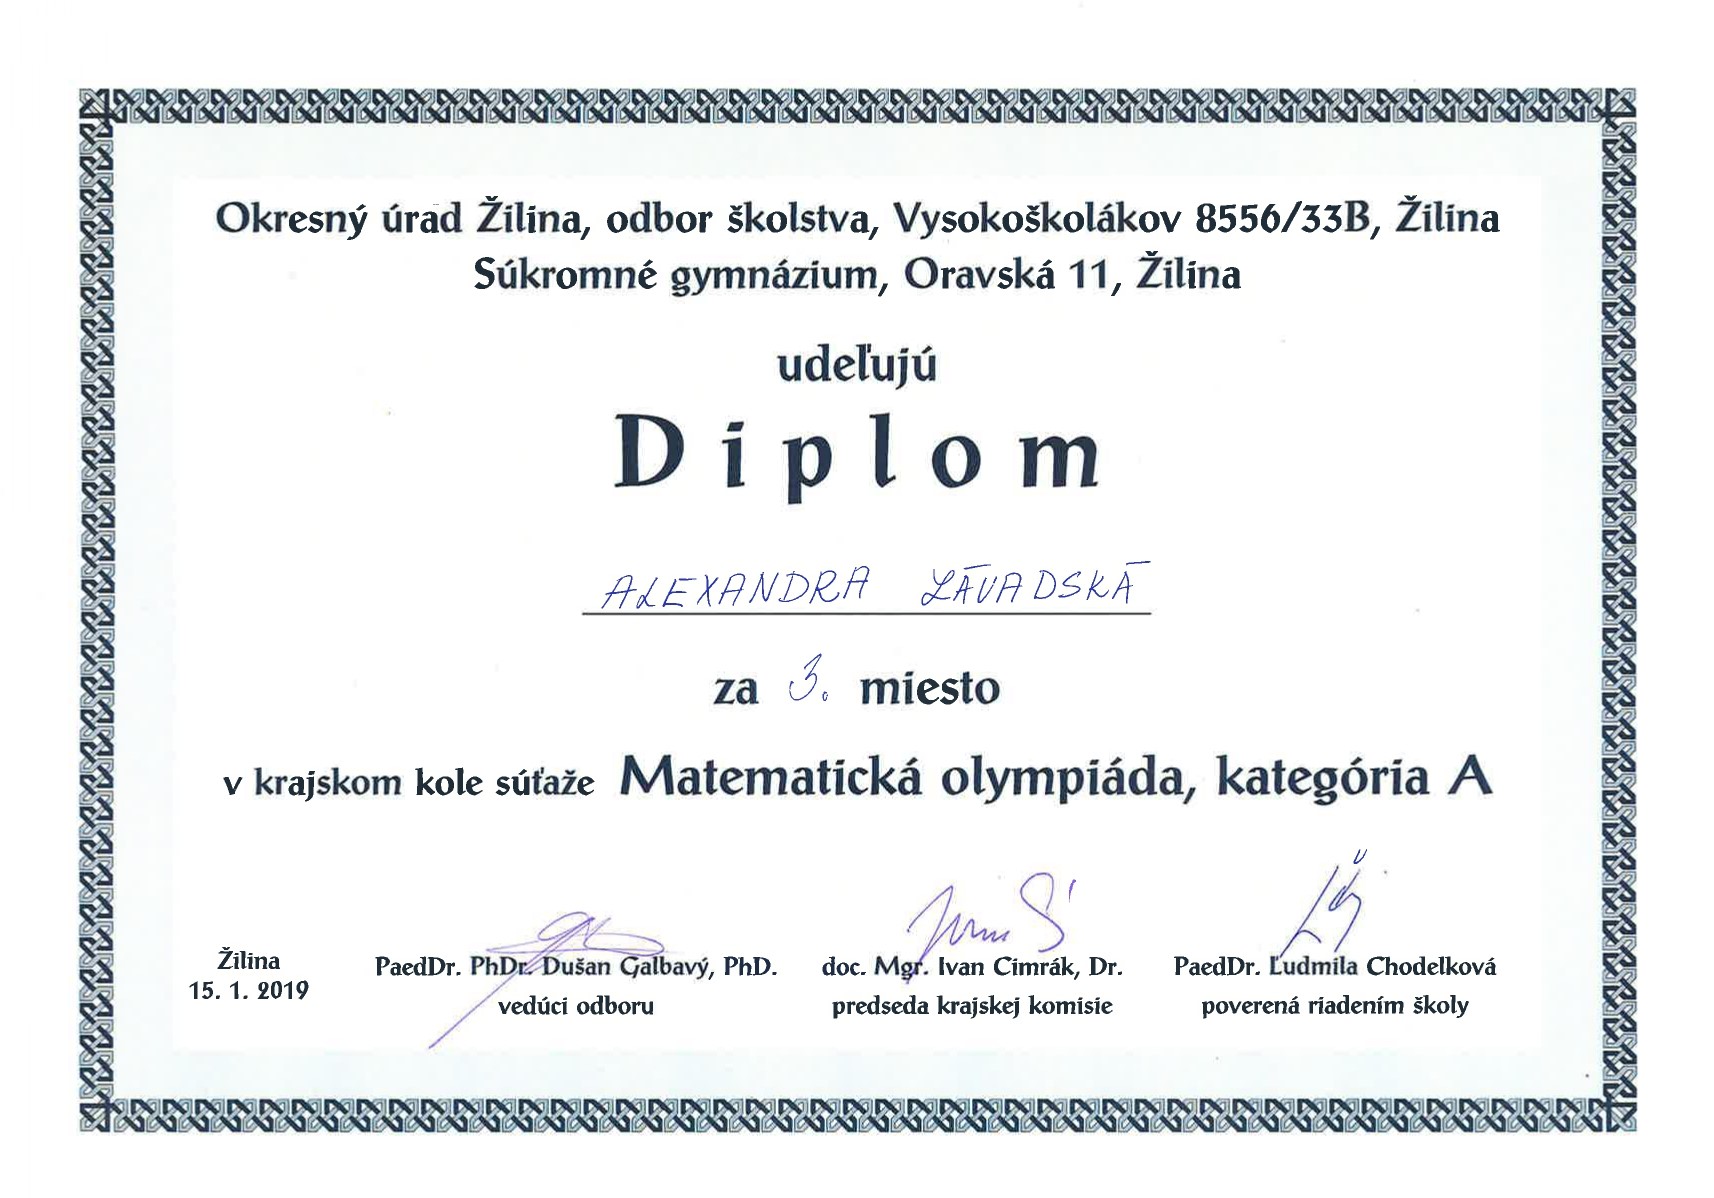 Regional bronze medalist in Mathematical Olympiad A, 2018, SKMO